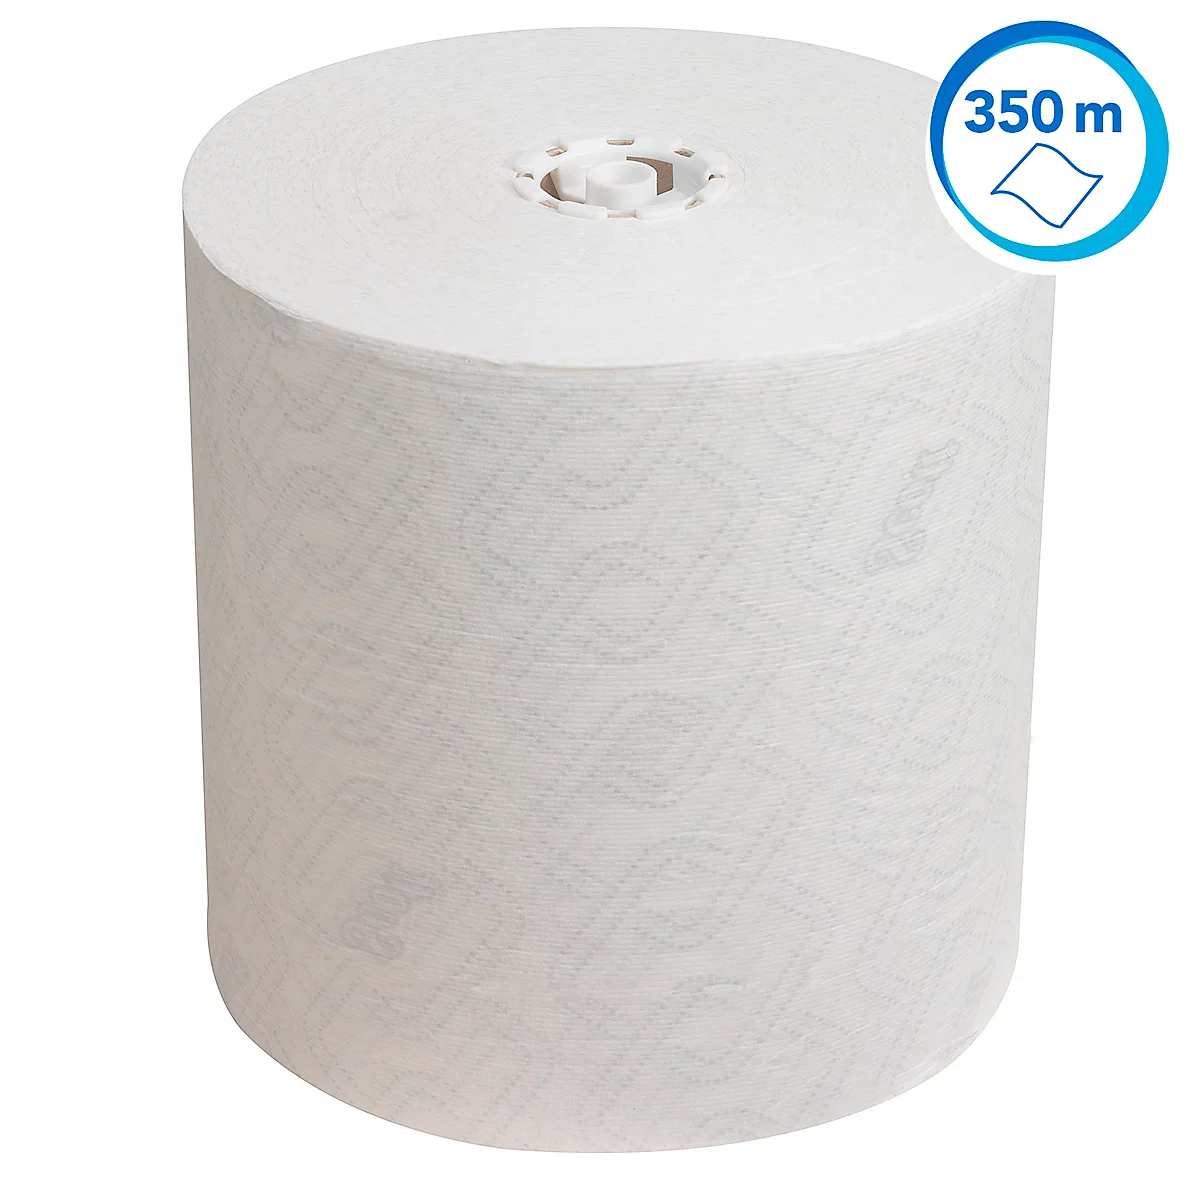 Bobine de papier essuie-tout industriel écologique 2 couches